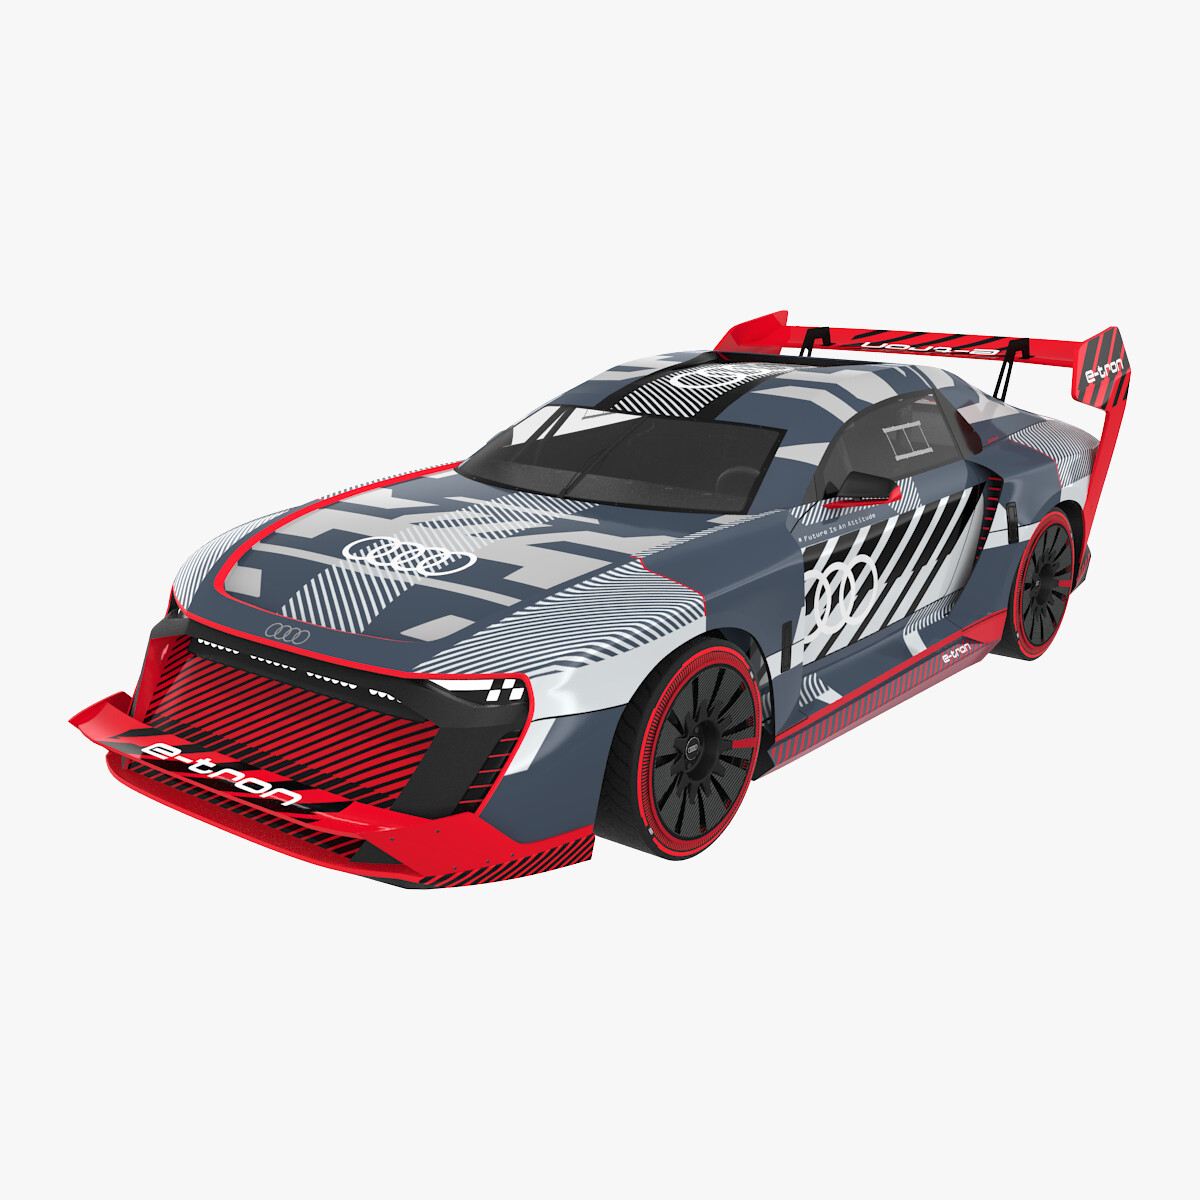 ArtStation - 3D model Audi S1 Hoonitron e-tron